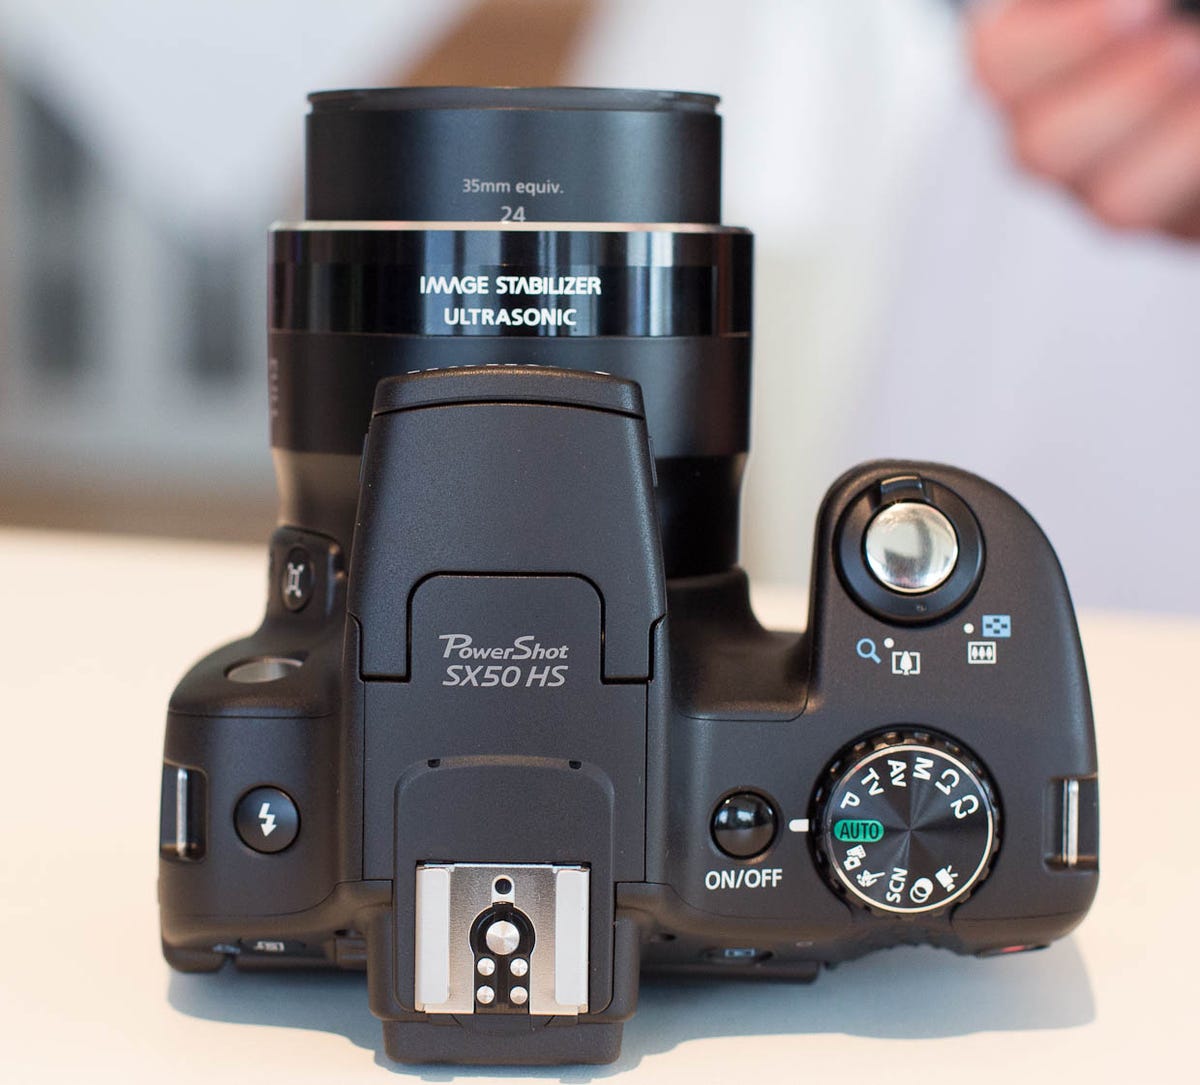 Canon PowerShot SX50 HS review: Canon PowerShot SX50 HS takes long title - CNET